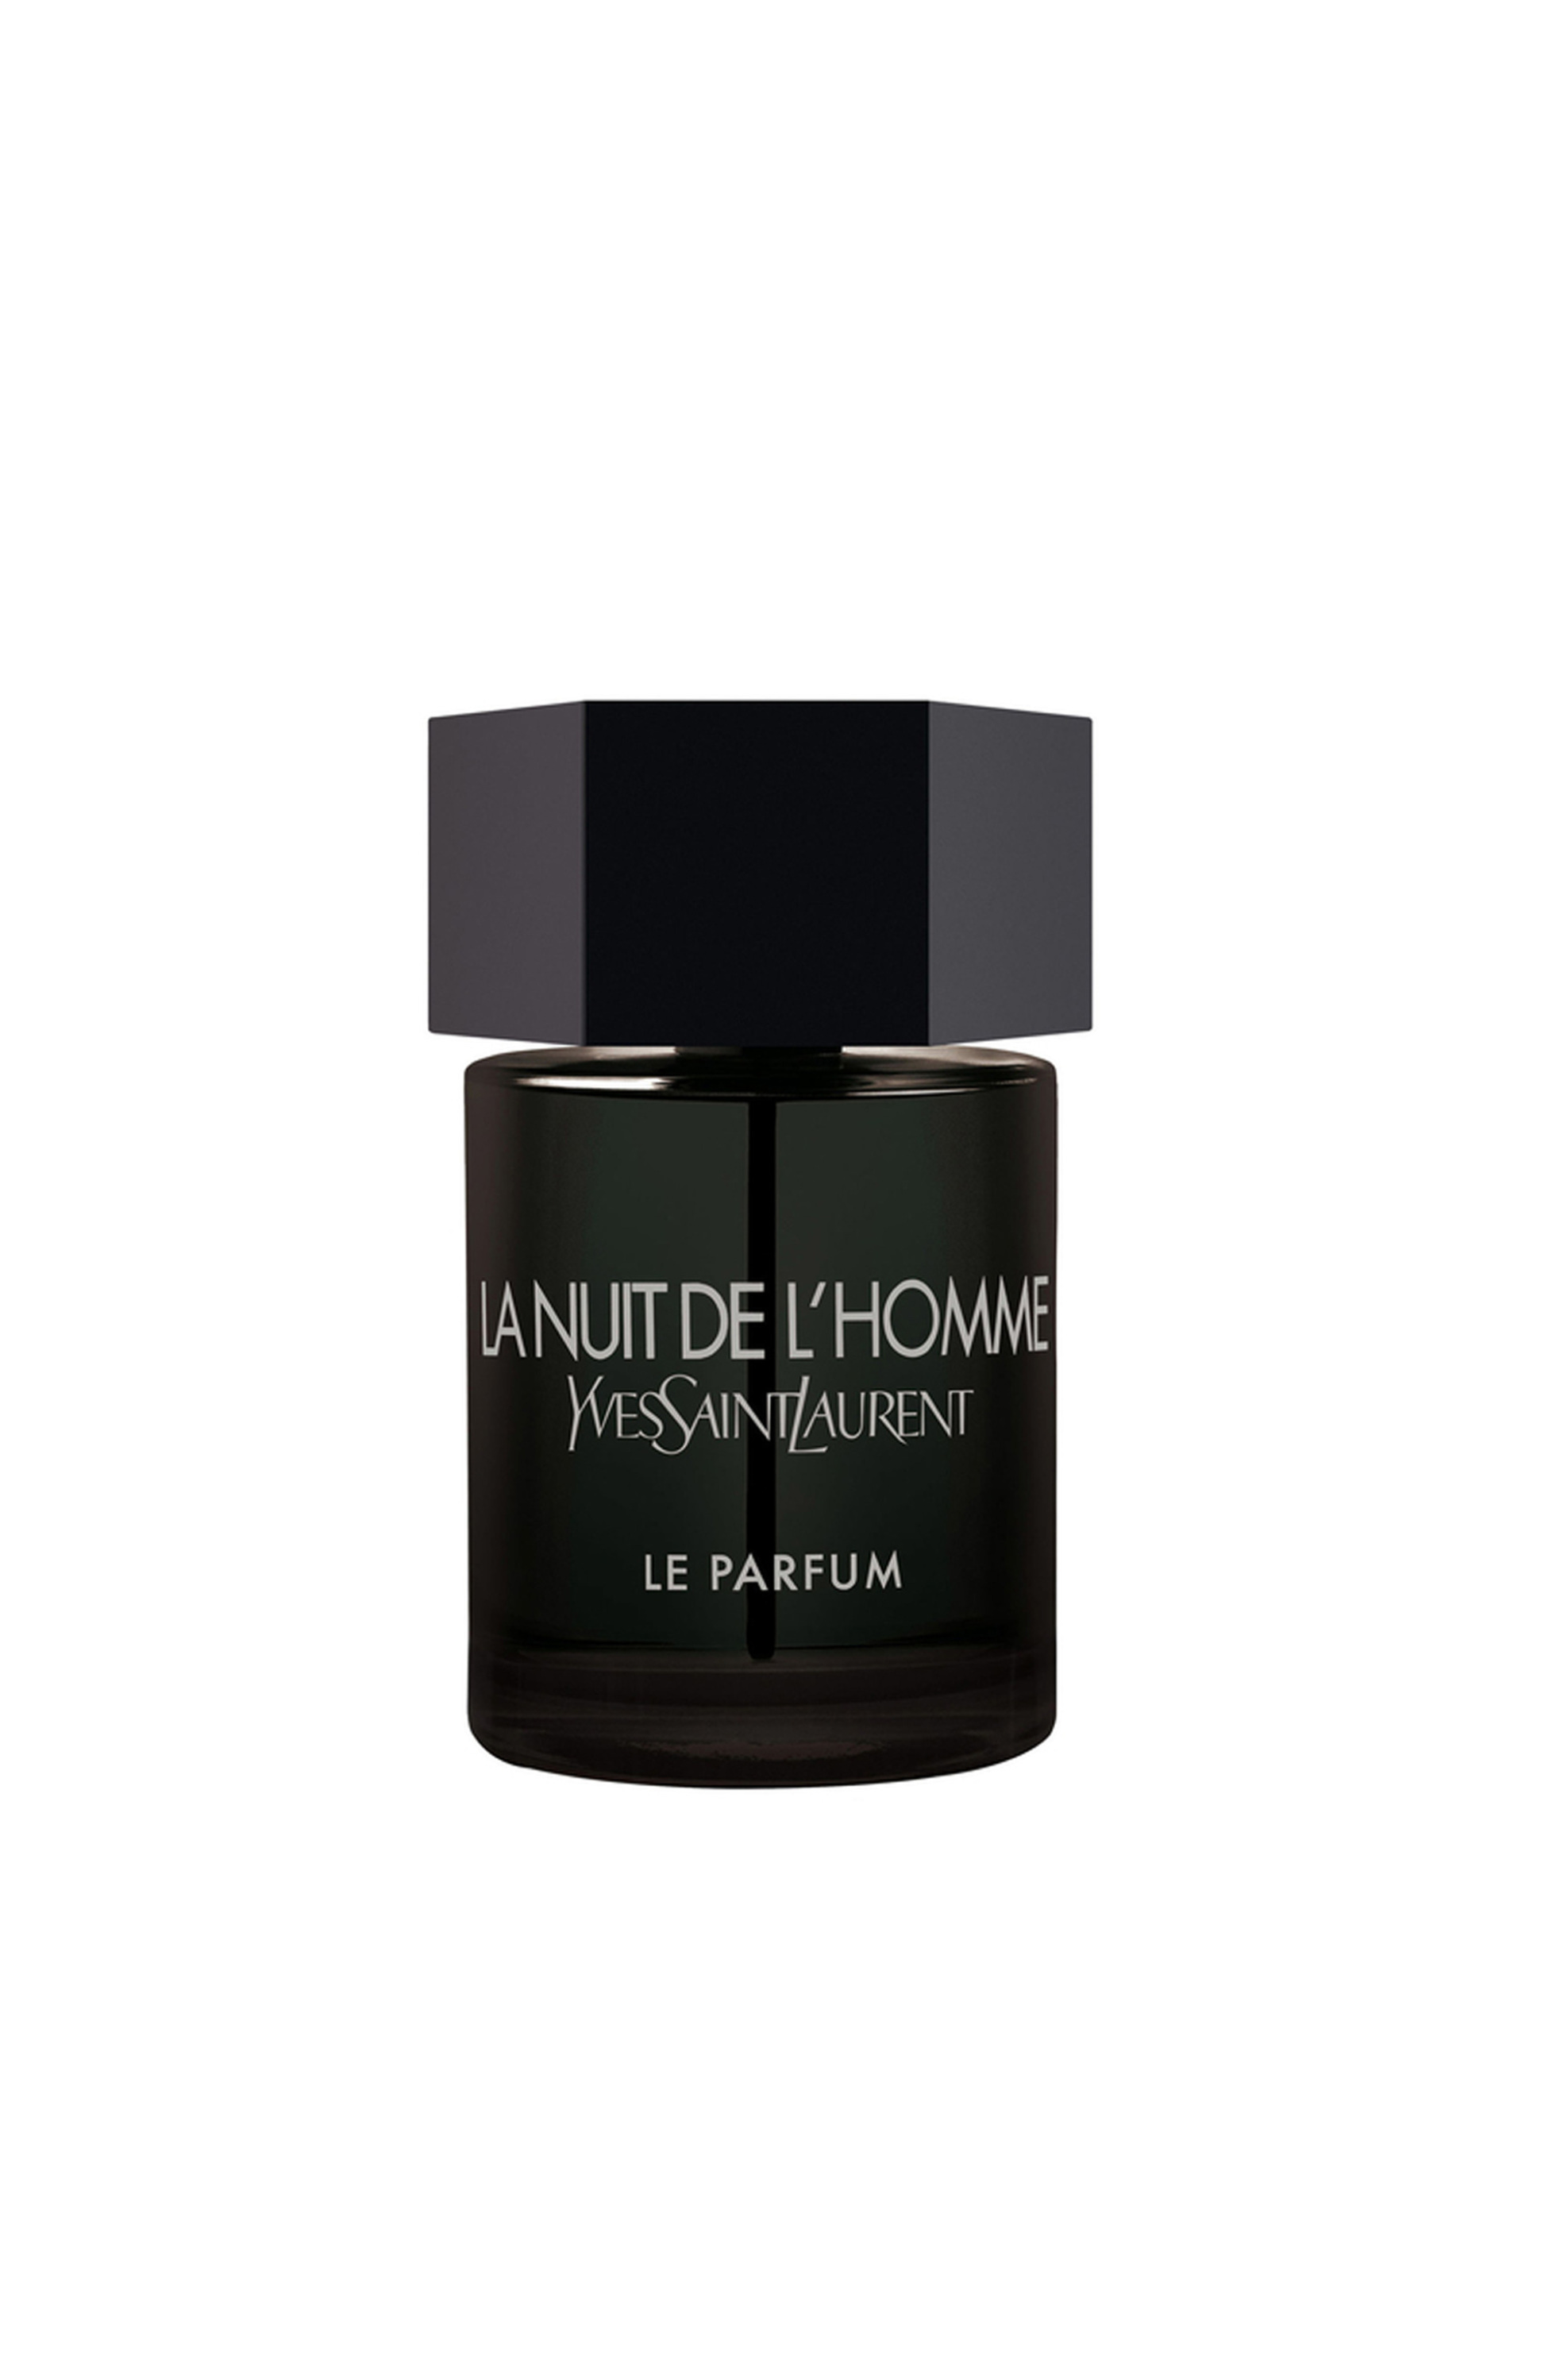 Ομορφιά > ΑΡΩΜΑΤΑ > Ανδρικά Αρώματα > Eau de Parfum - Parfum Yves Saint Laurent La Nuit De L’ Homme Le Parfum - 3365440621015